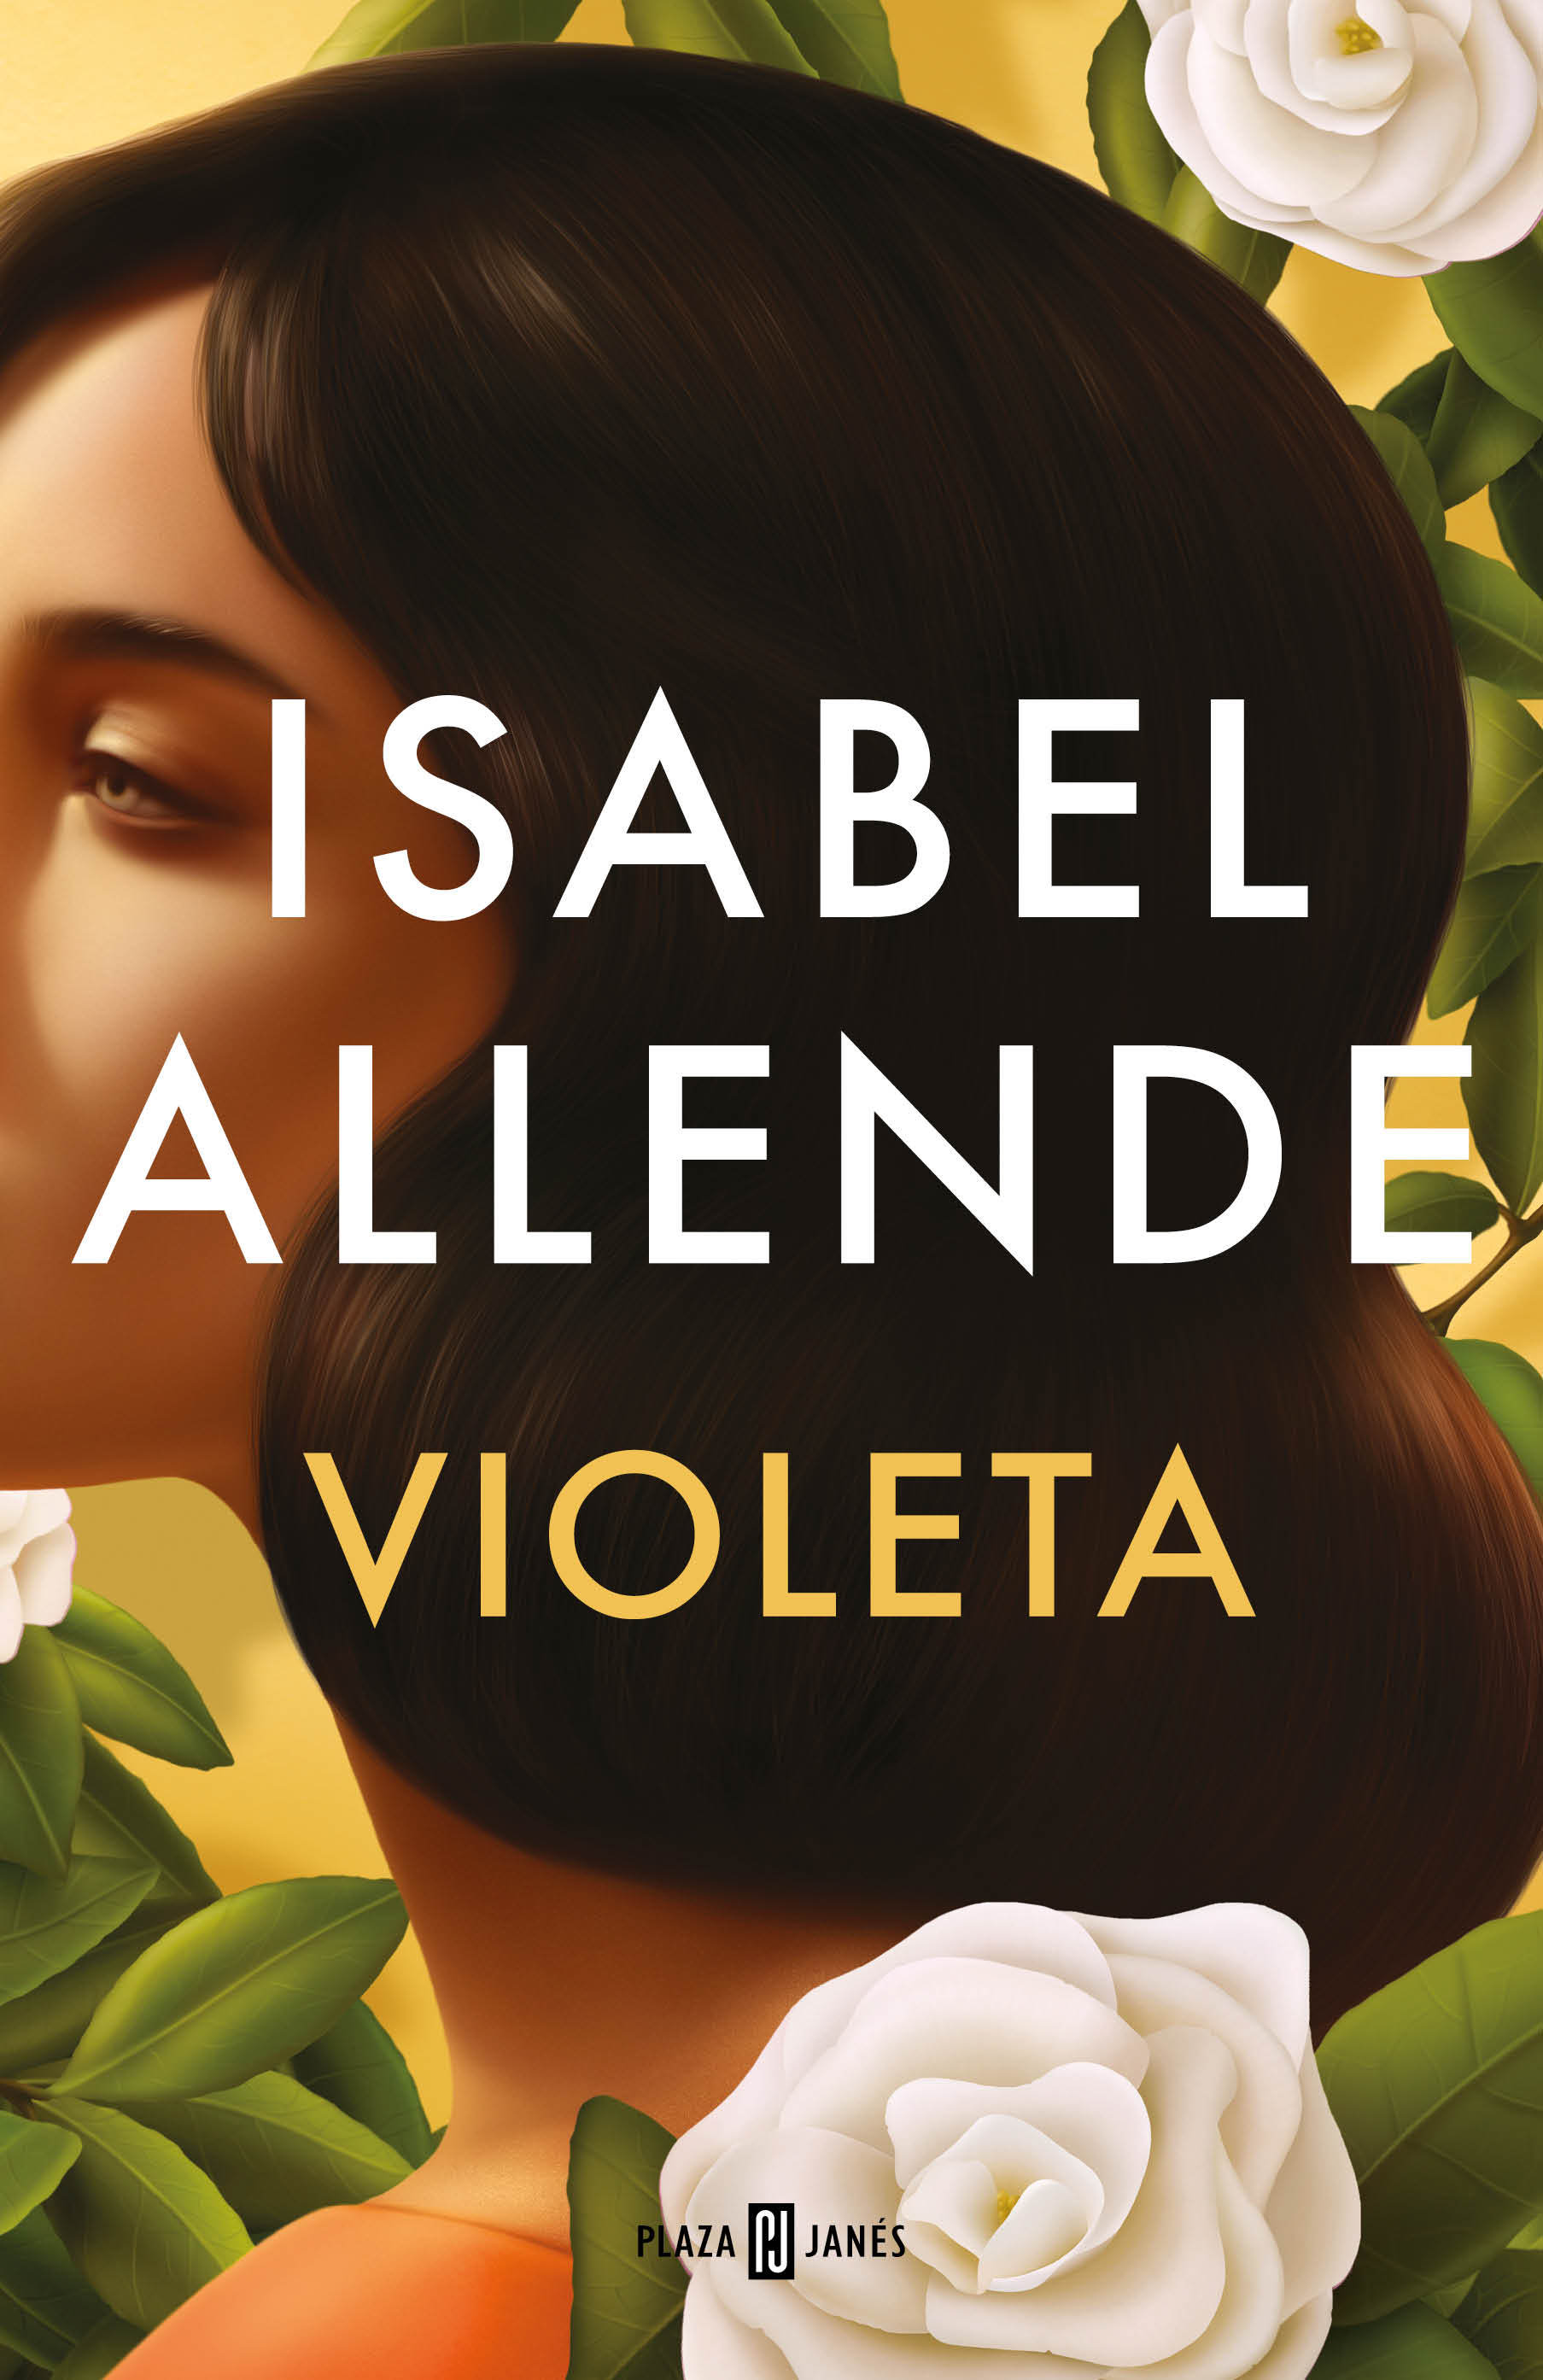 Cubierta de 'Violeta', el nuevo libro de Isabel Allende.